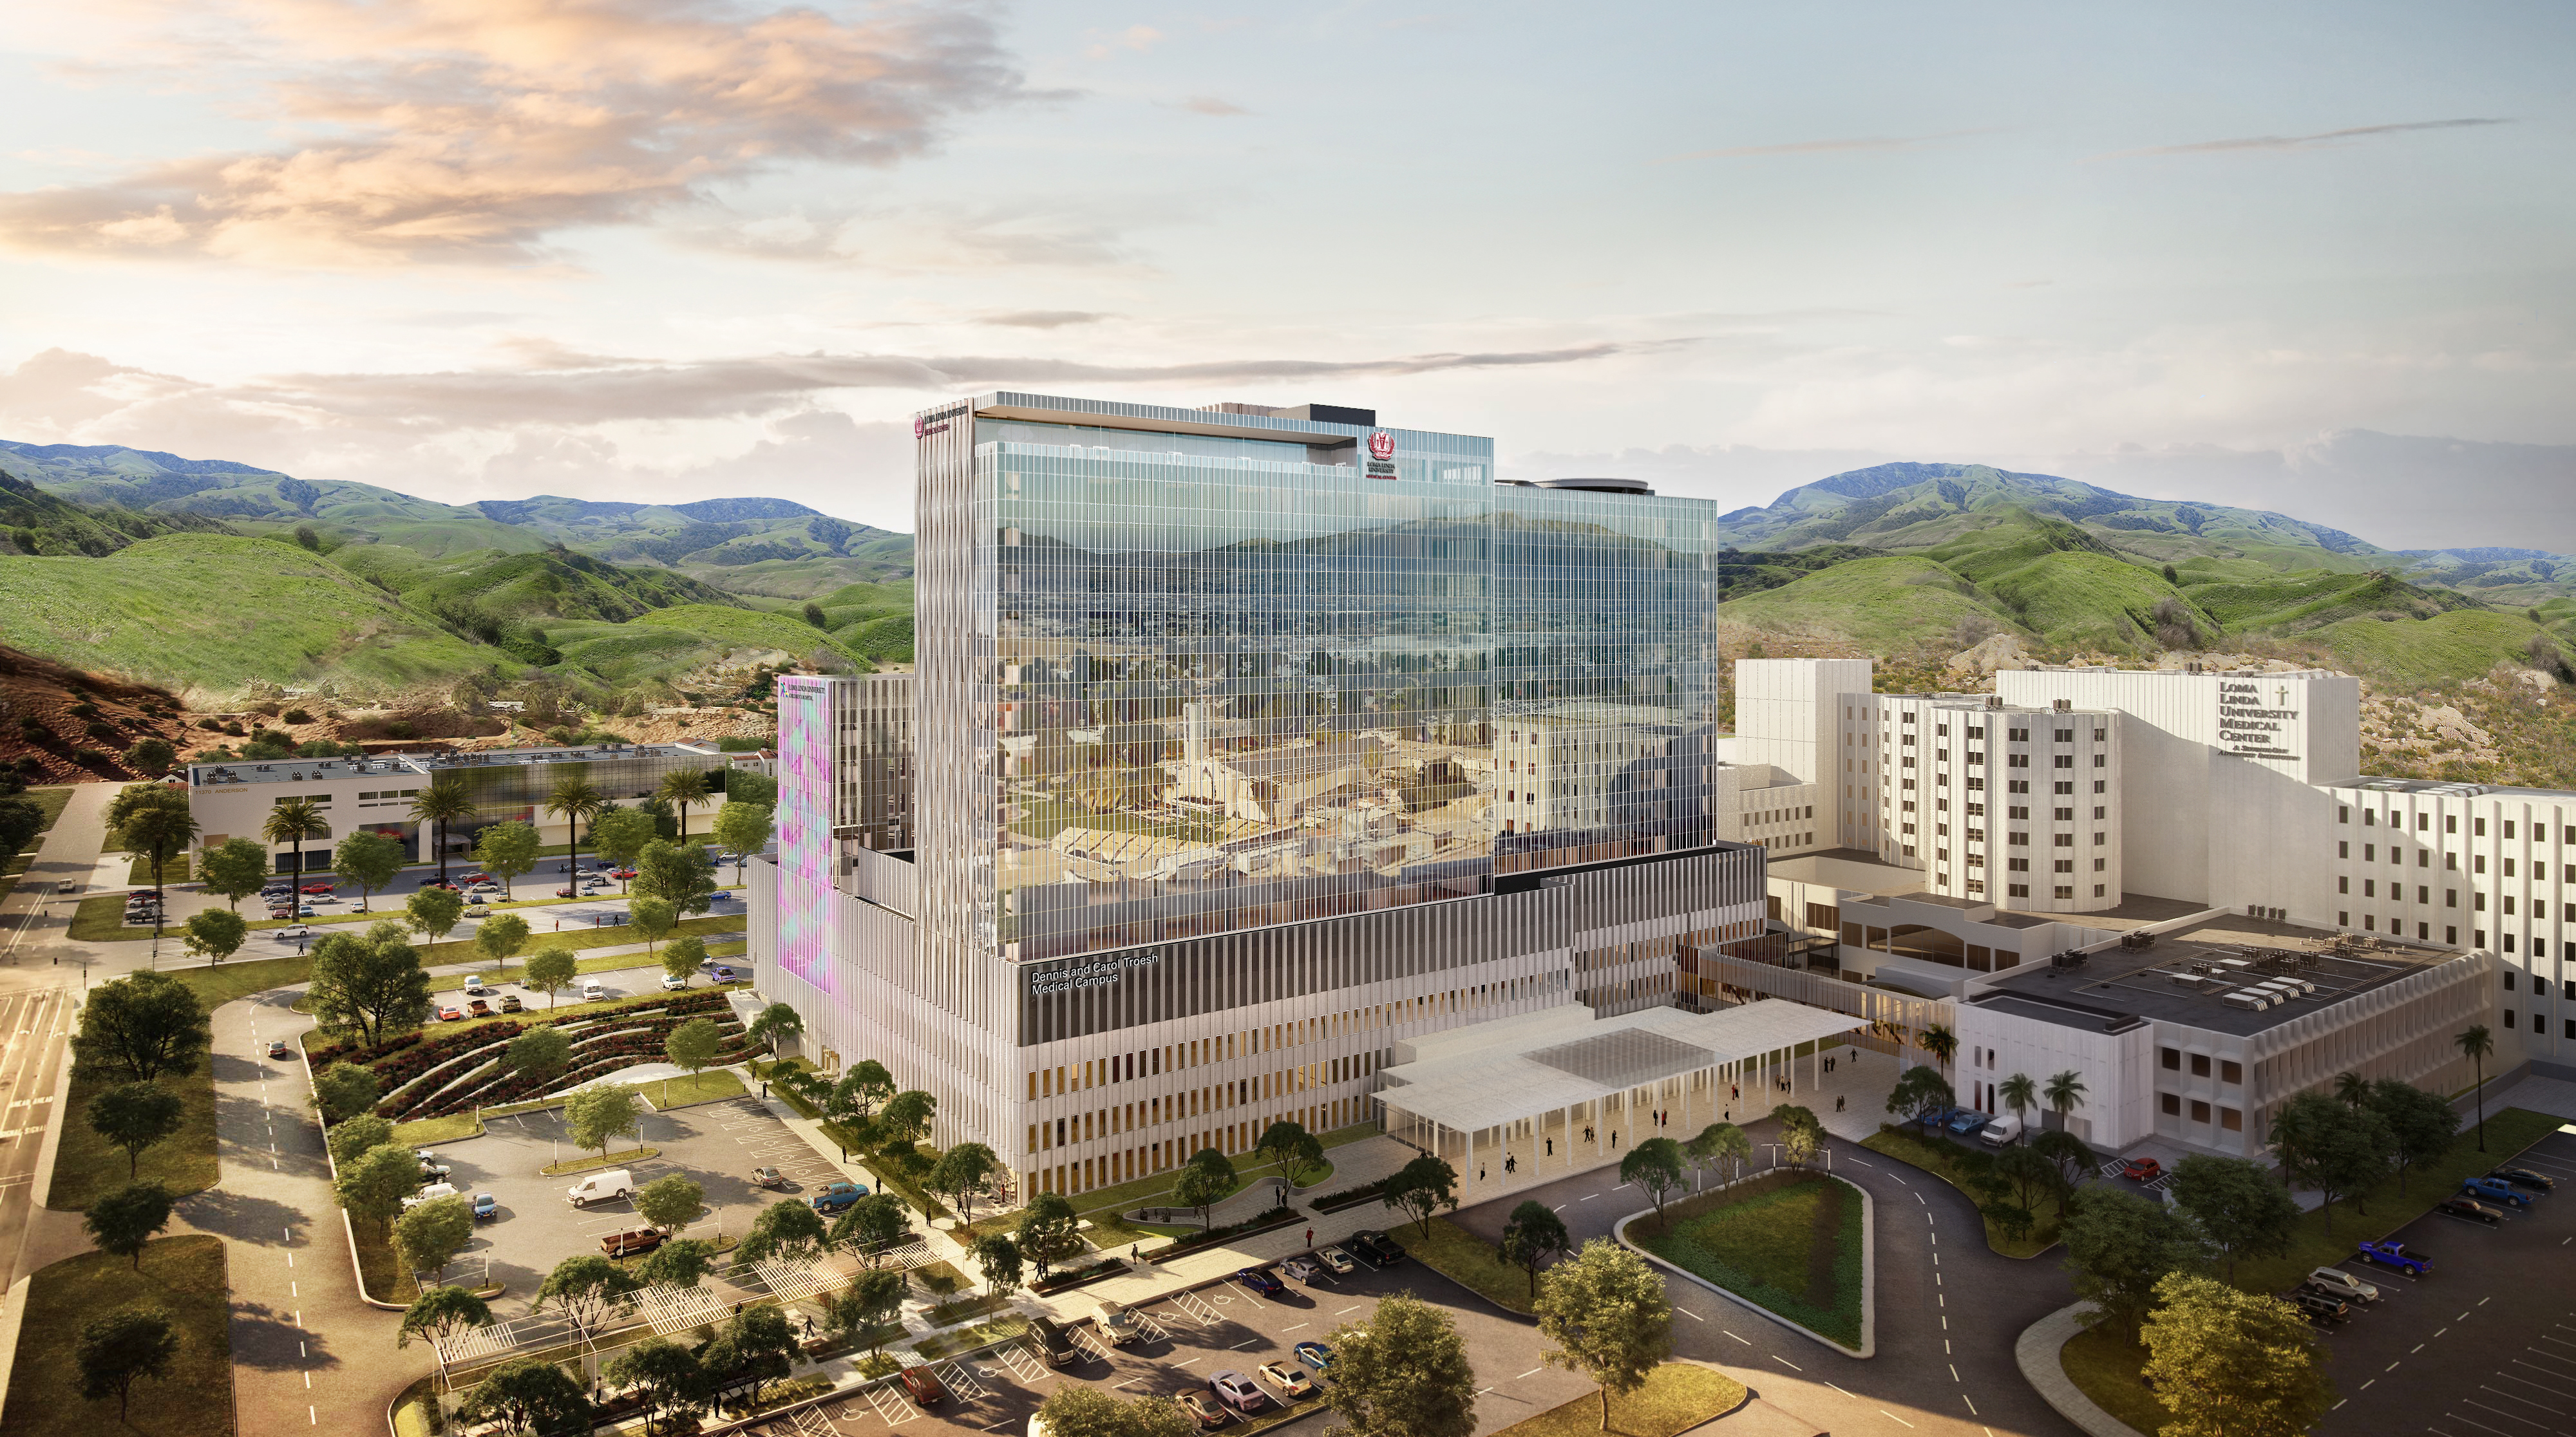 LLUH new hospital complex rendering